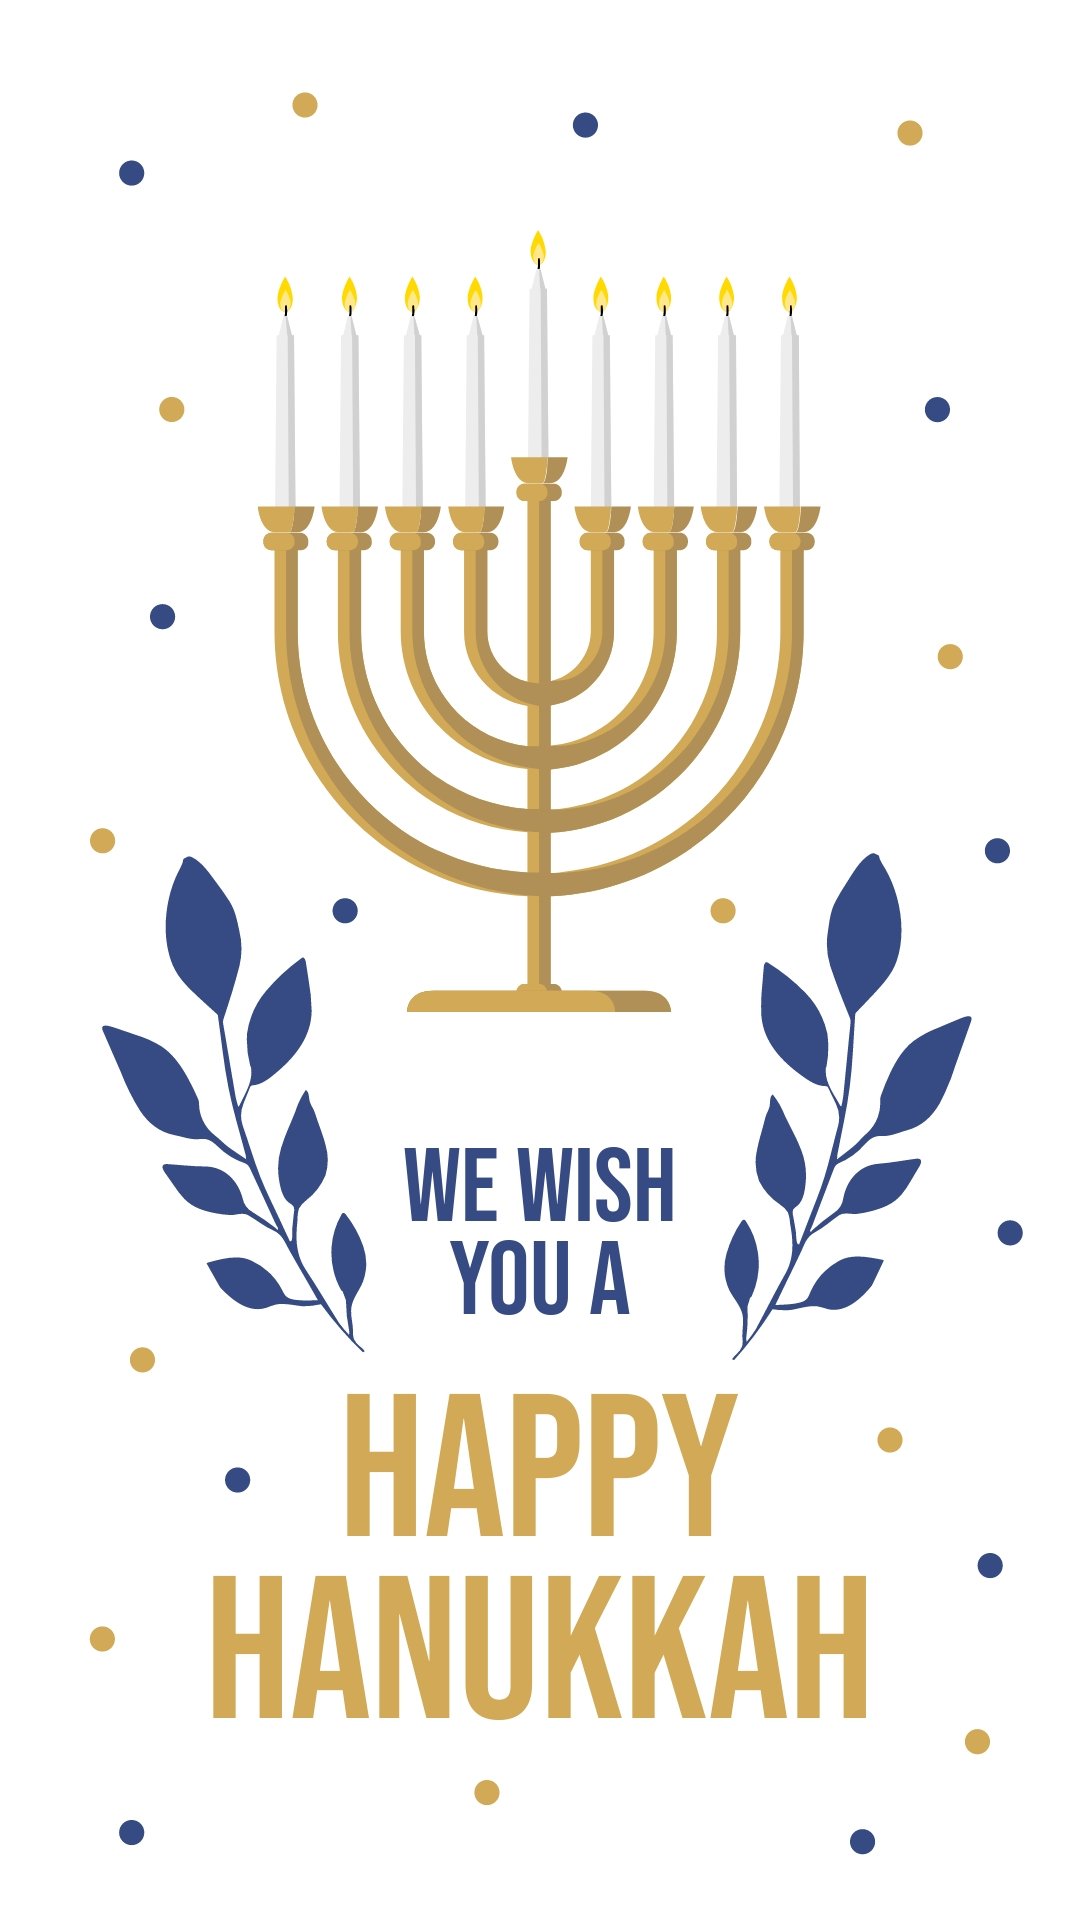 Free Happy Hanukkah Instagram Story Template